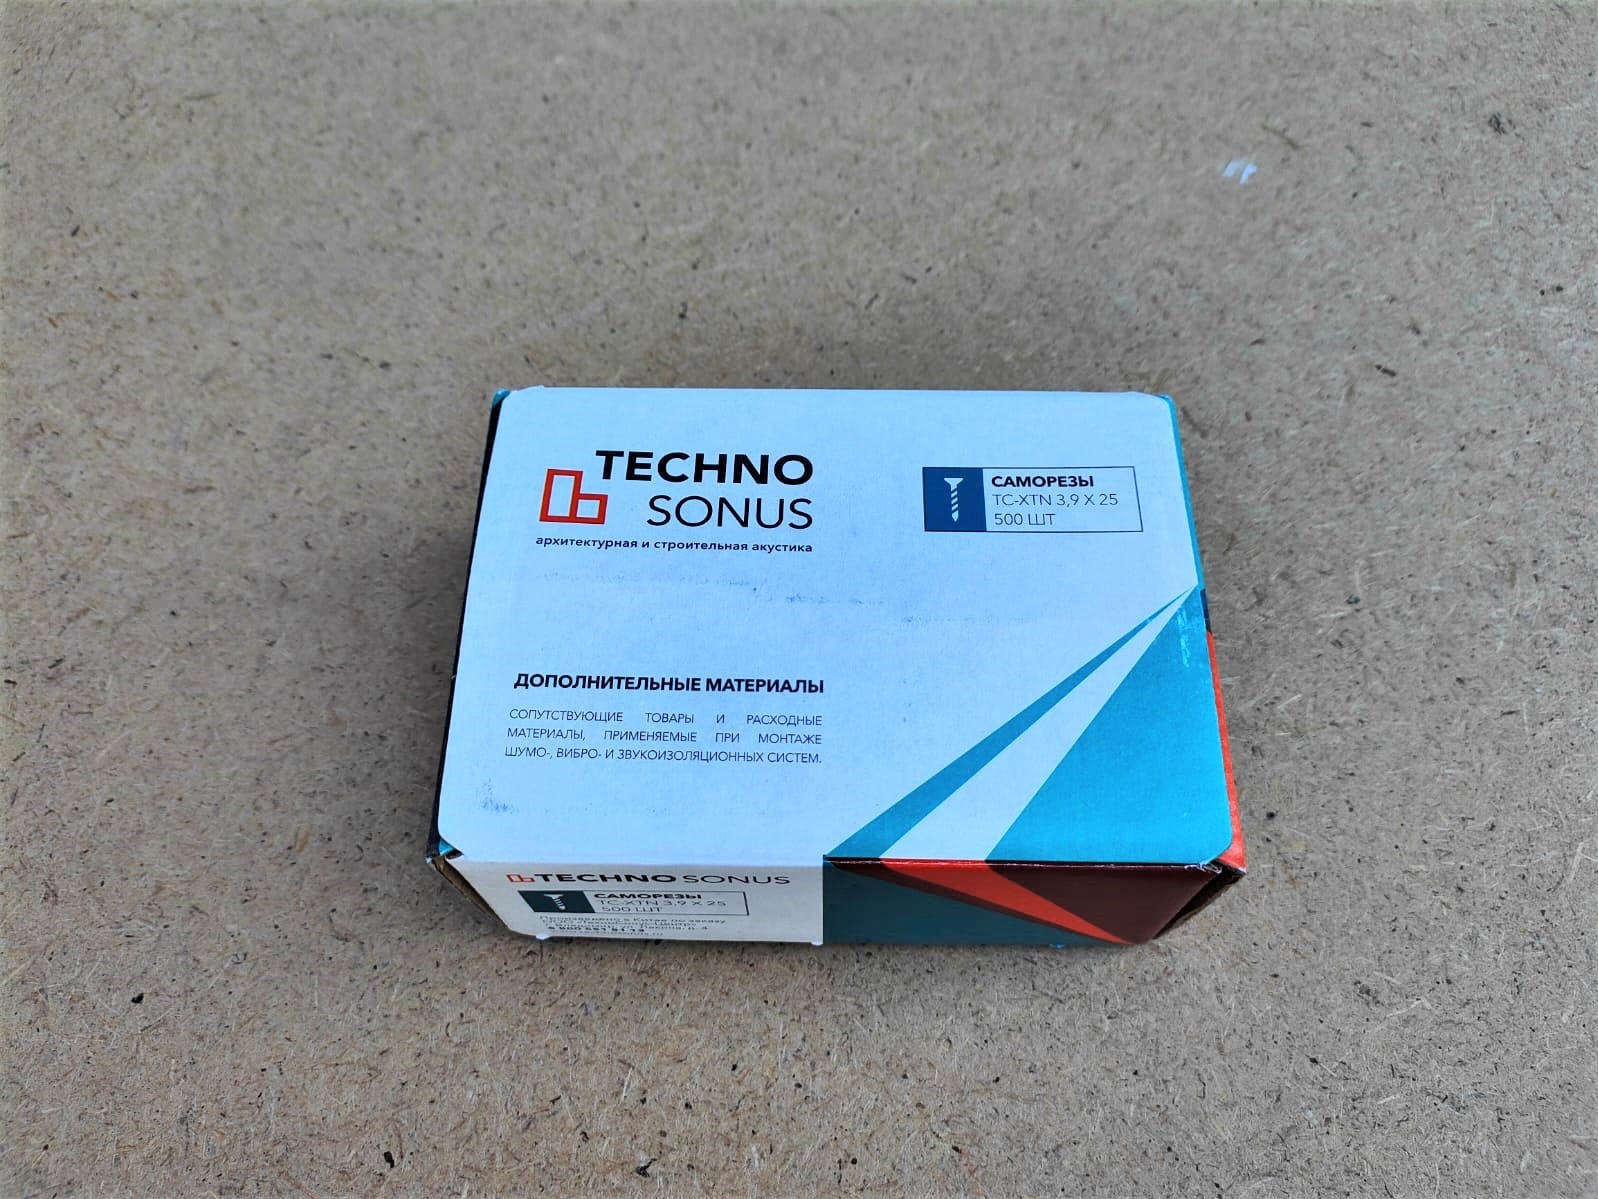 Саморезы TC-XTN 3,9х25 TECHNO SONUS (Техносонус) (500 шт)